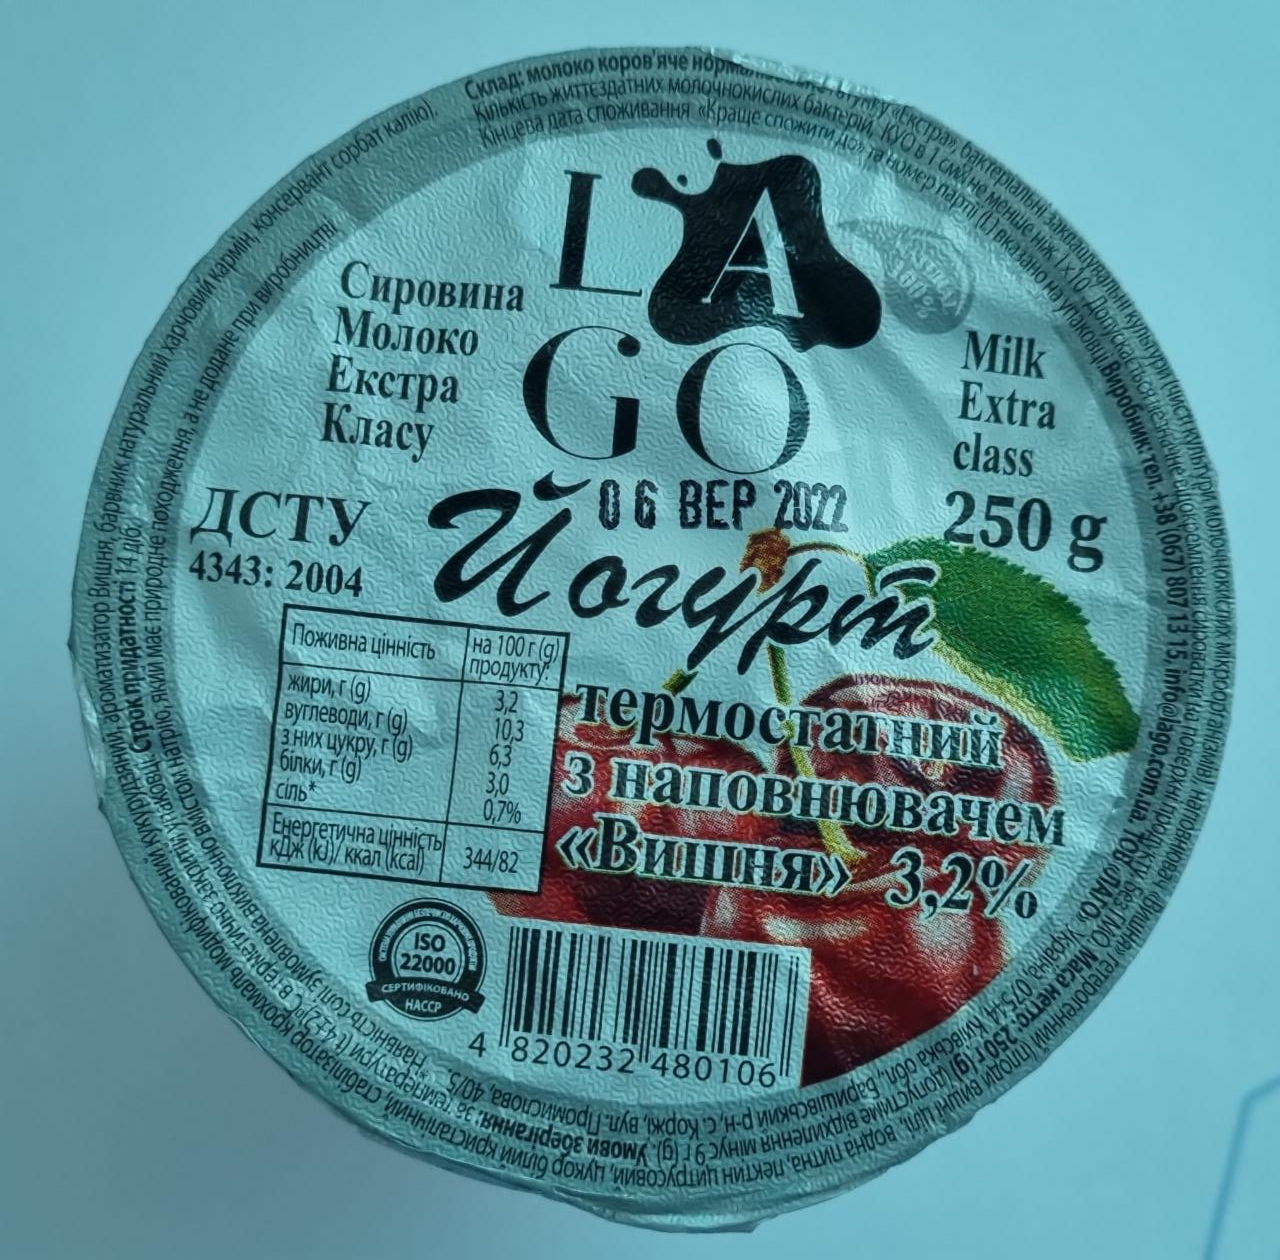 Фото - Йогурт термостатний з наповнювачем вишня 3.2% Lago